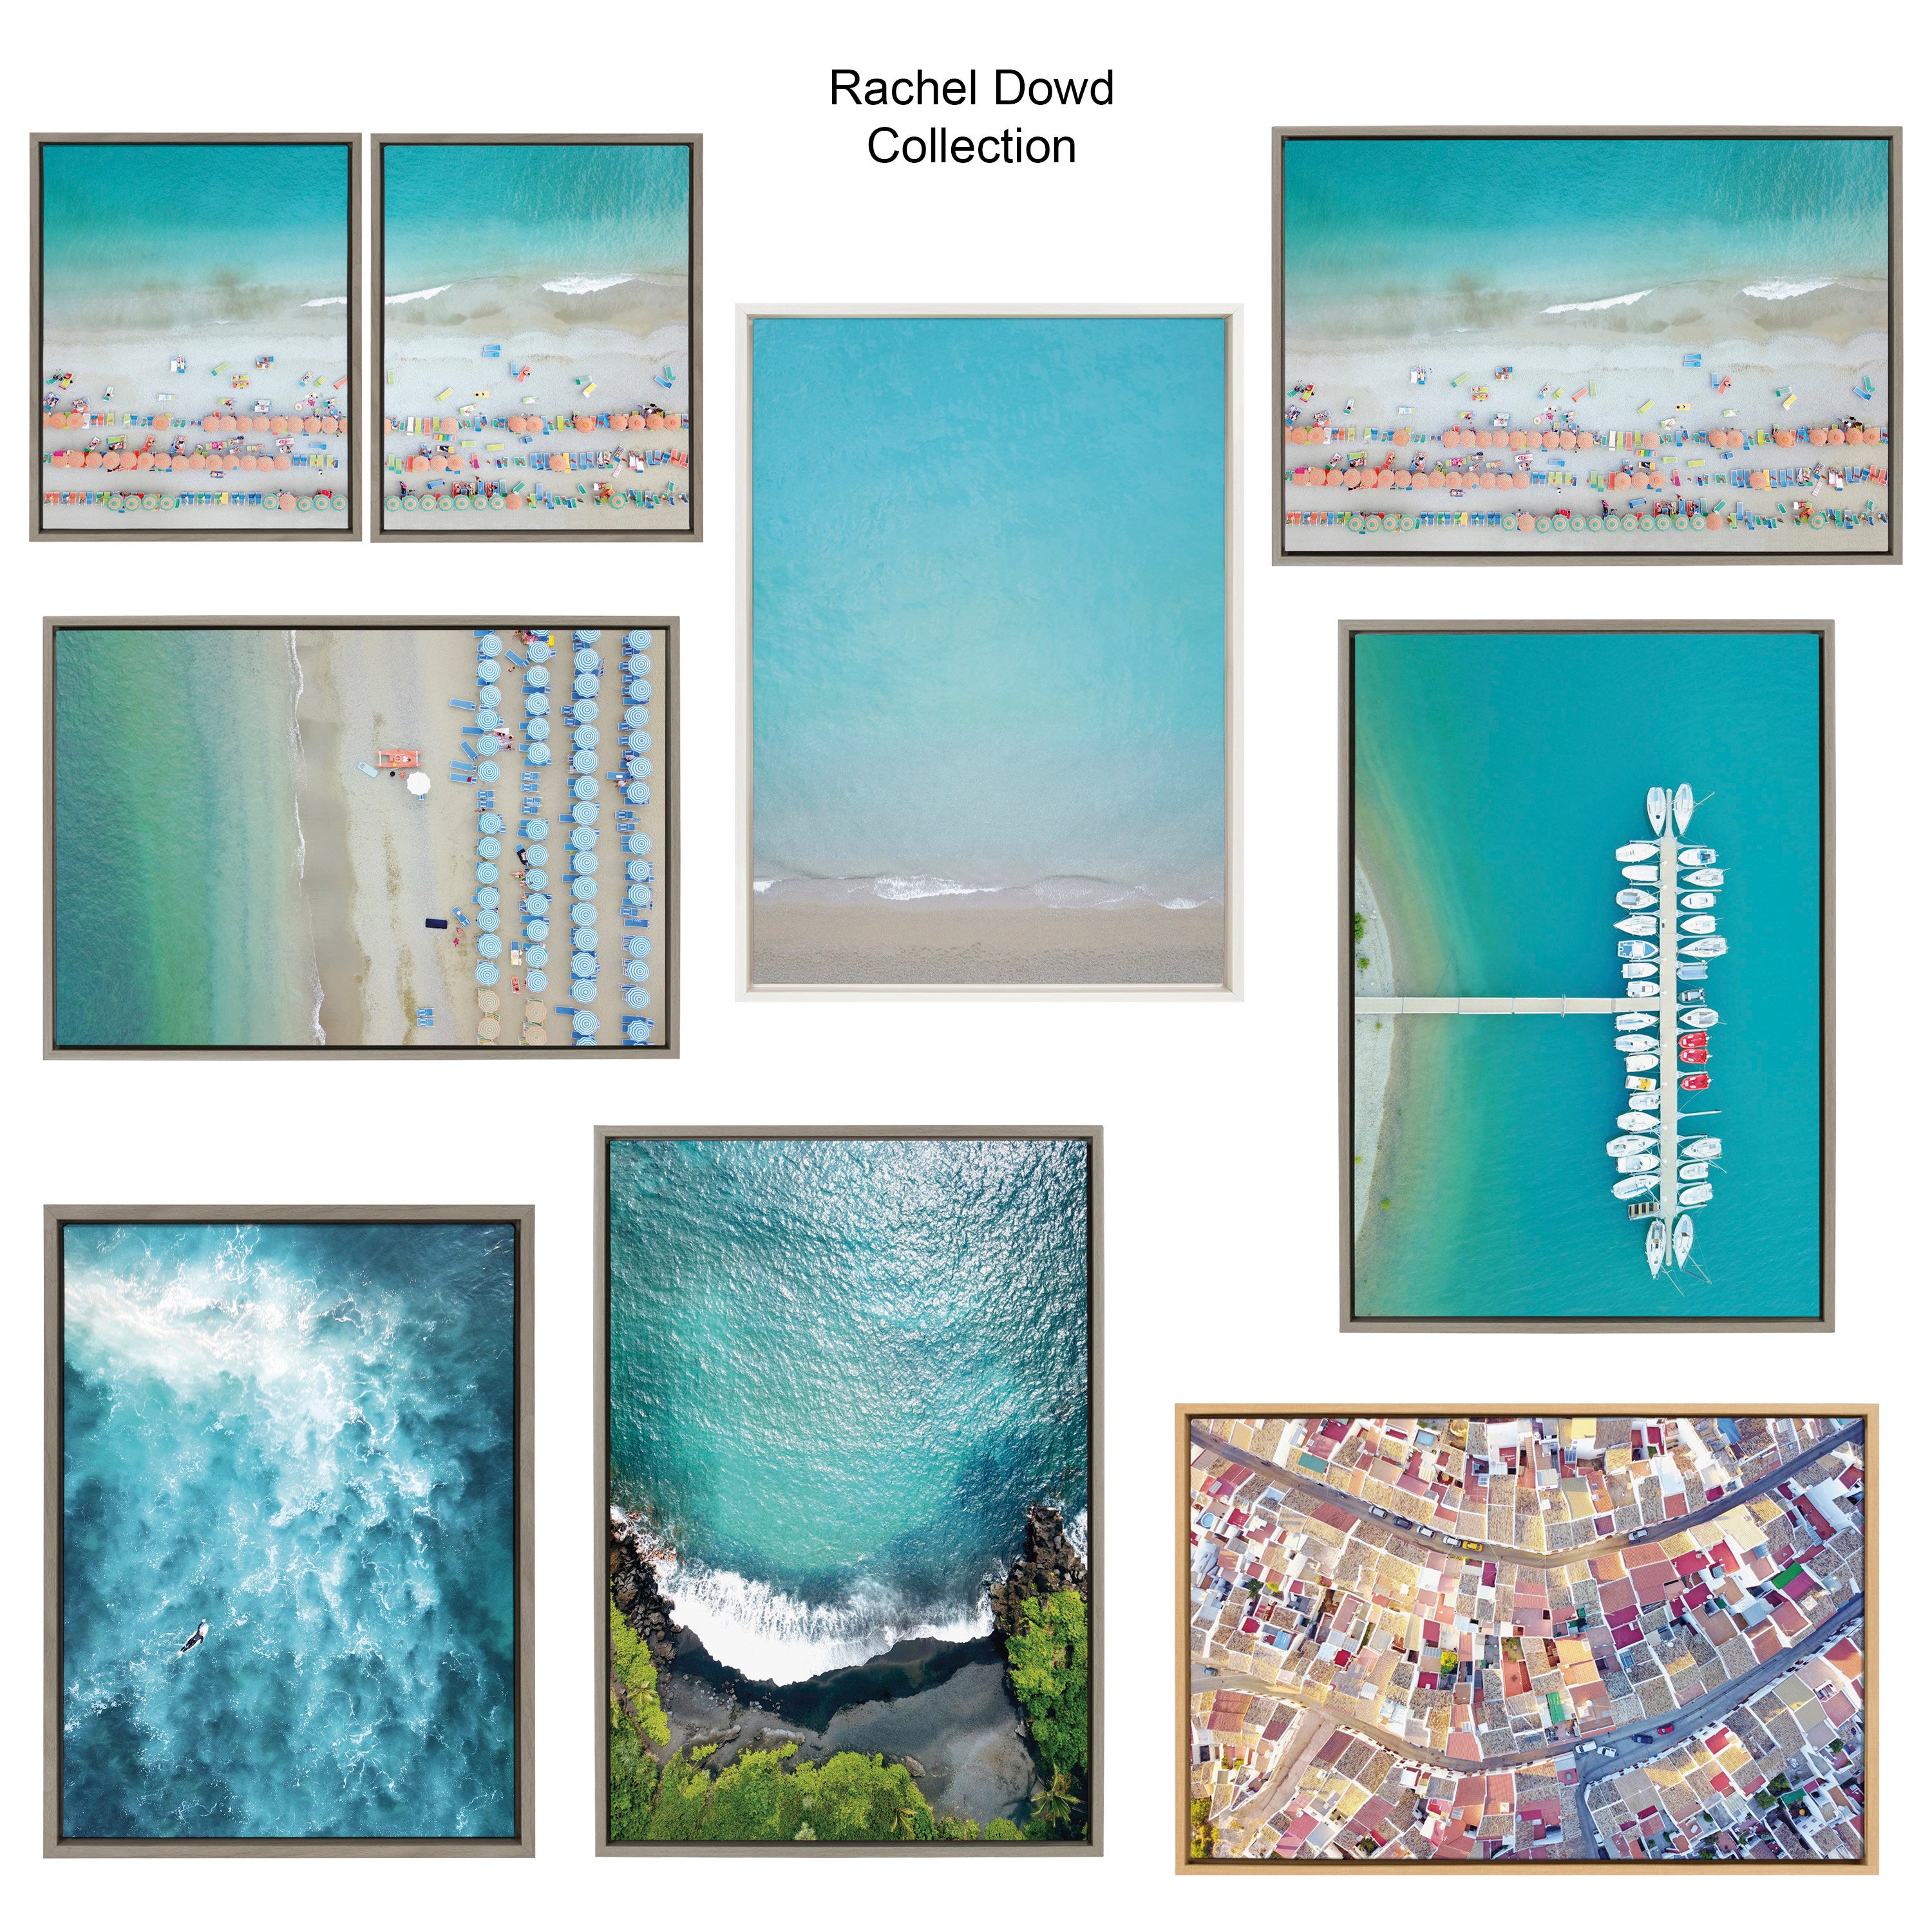 Sylvie Maui Black Sand Beach 1 Framed Canvas by Rachel Bolgov